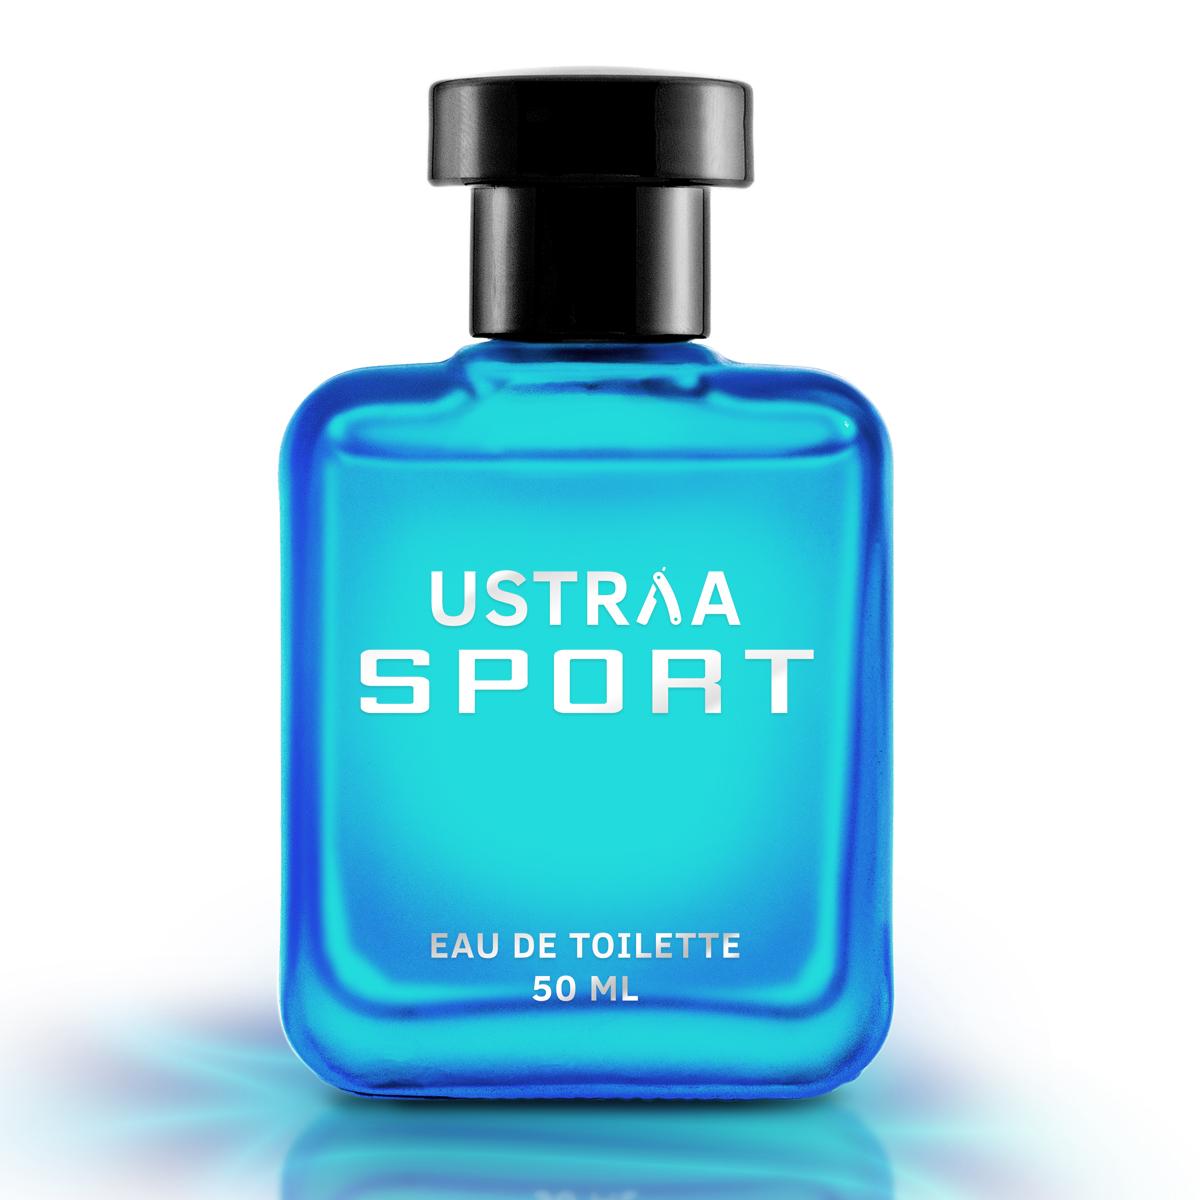 Ustraa Sport EDT Perfume for Men - Long-Lasting Perfume